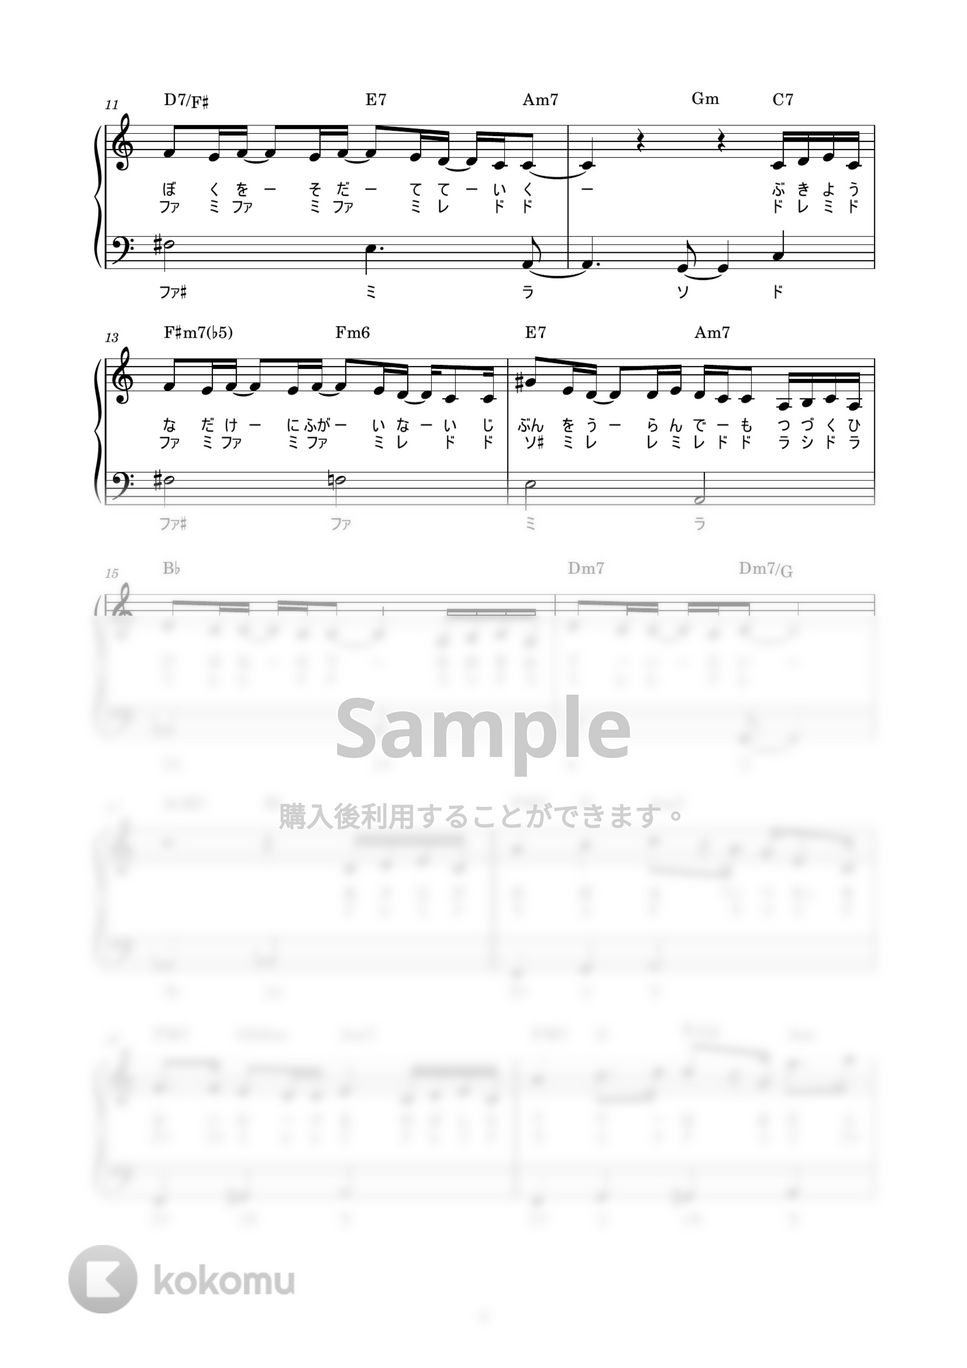 幾田 りら - ANSWER (かんたん / 歌詞付き / ドレミ付き / 初心者) by piano.tokyo